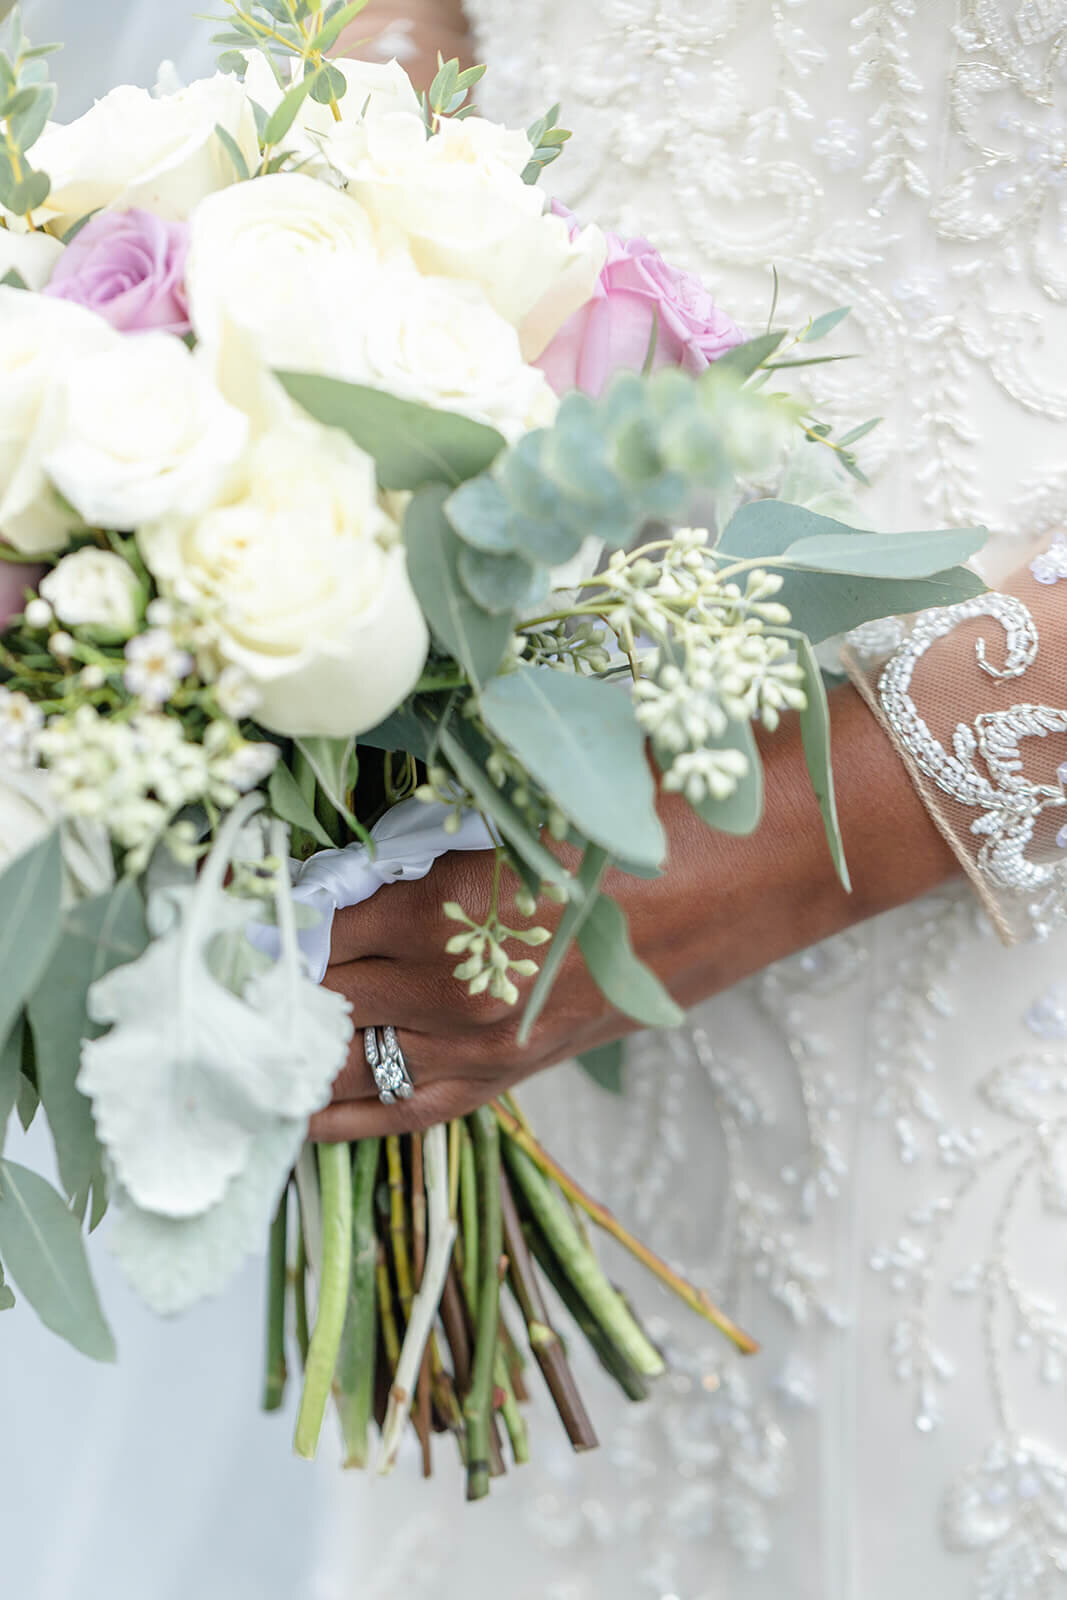 white rose bridal bouquet